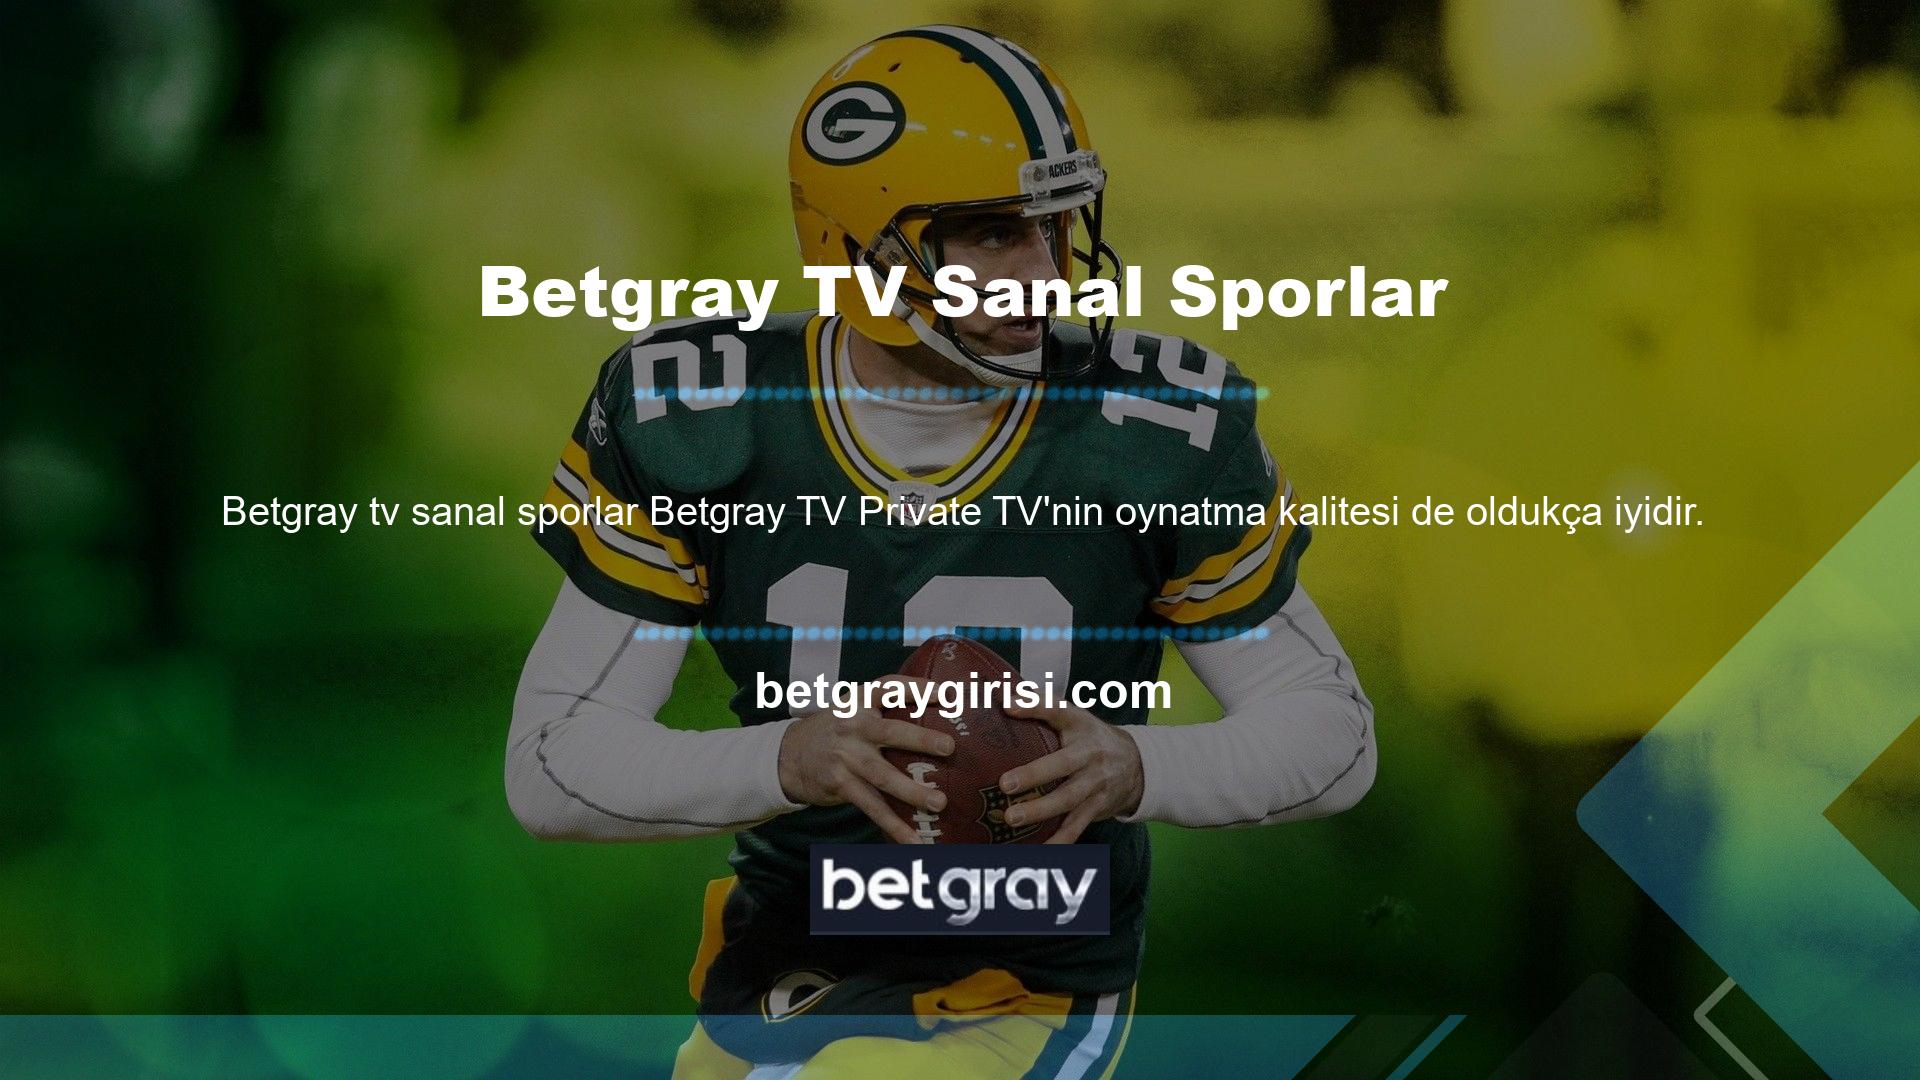 Betgray TV'nin sanal spor sitesi, maçları takılmadan izlemenize olanak sağlıyor